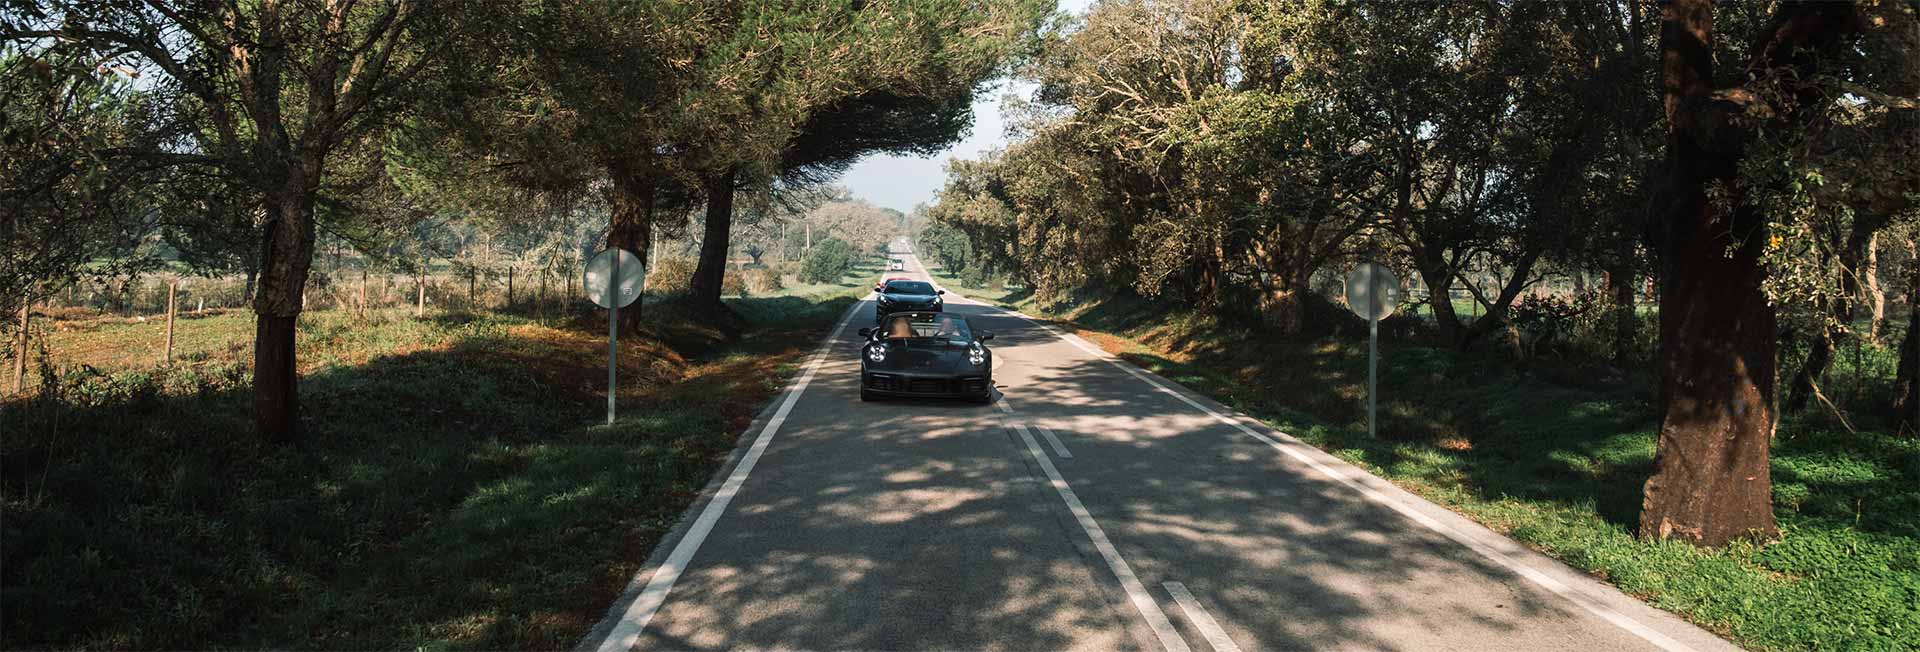 drive in motion Portugal Sportwagen auf Landstraße